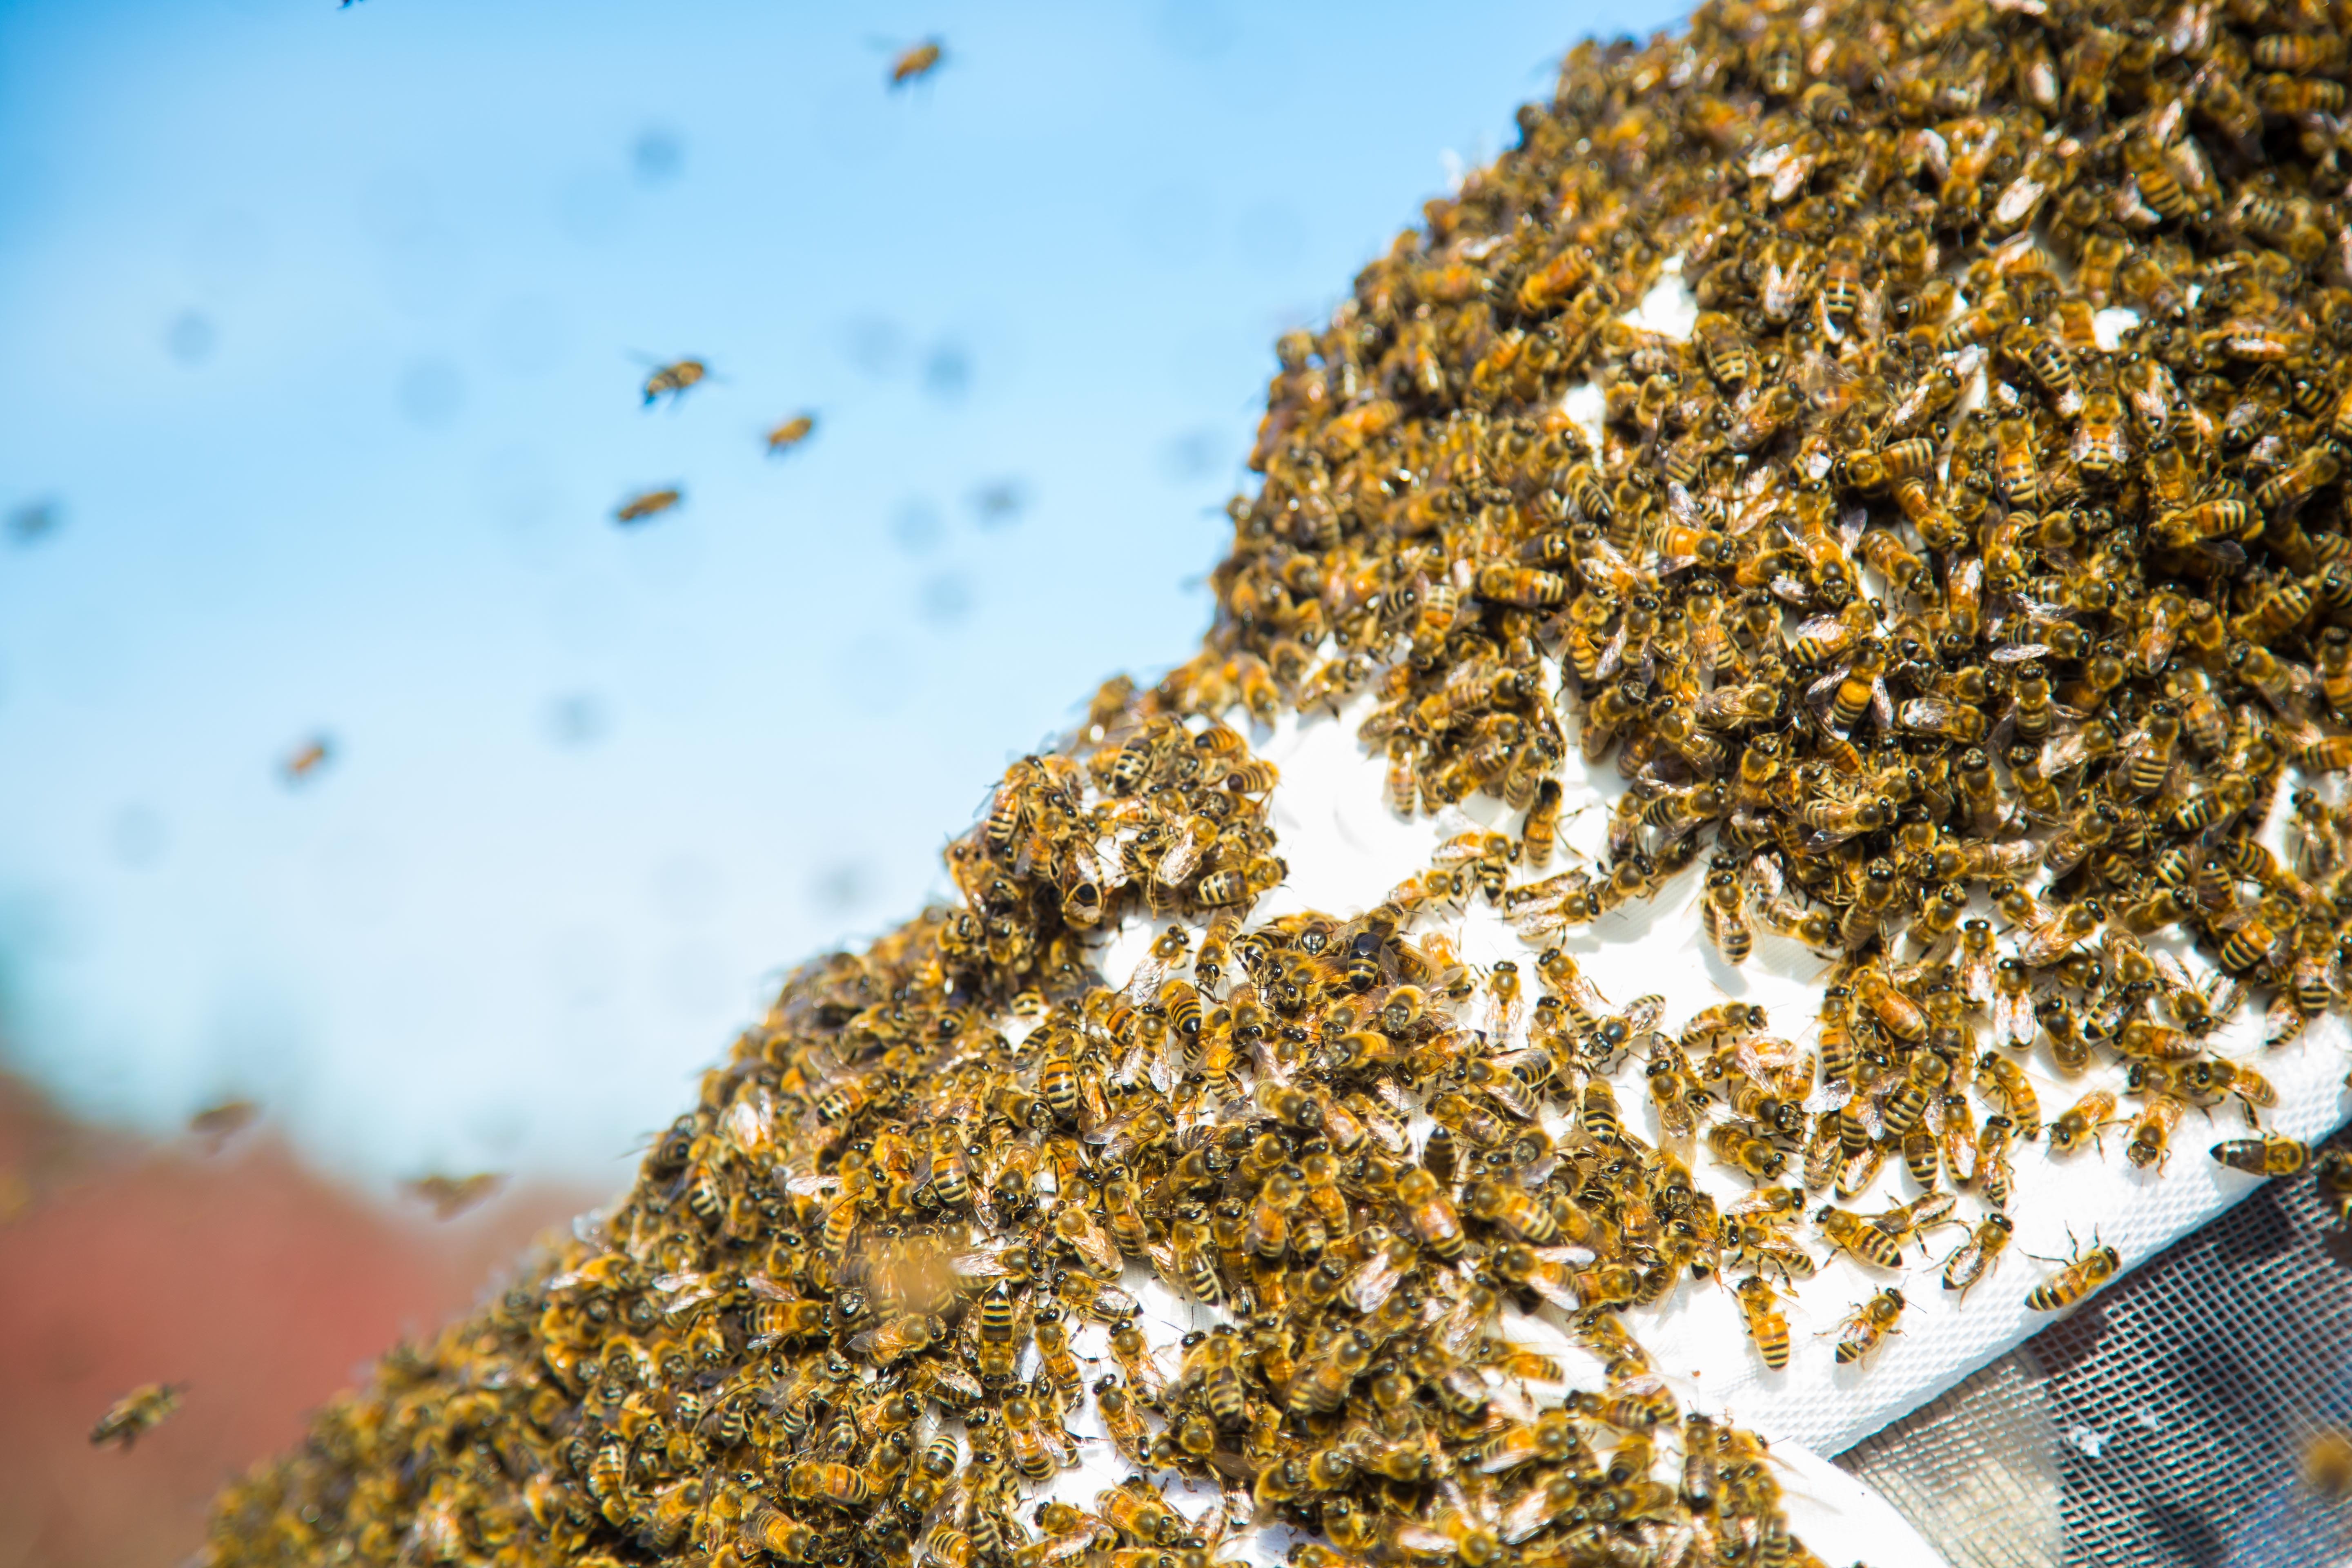 Sciamatura api allarma cittadini. “Non infastiditele e chiamate un apicoltore”